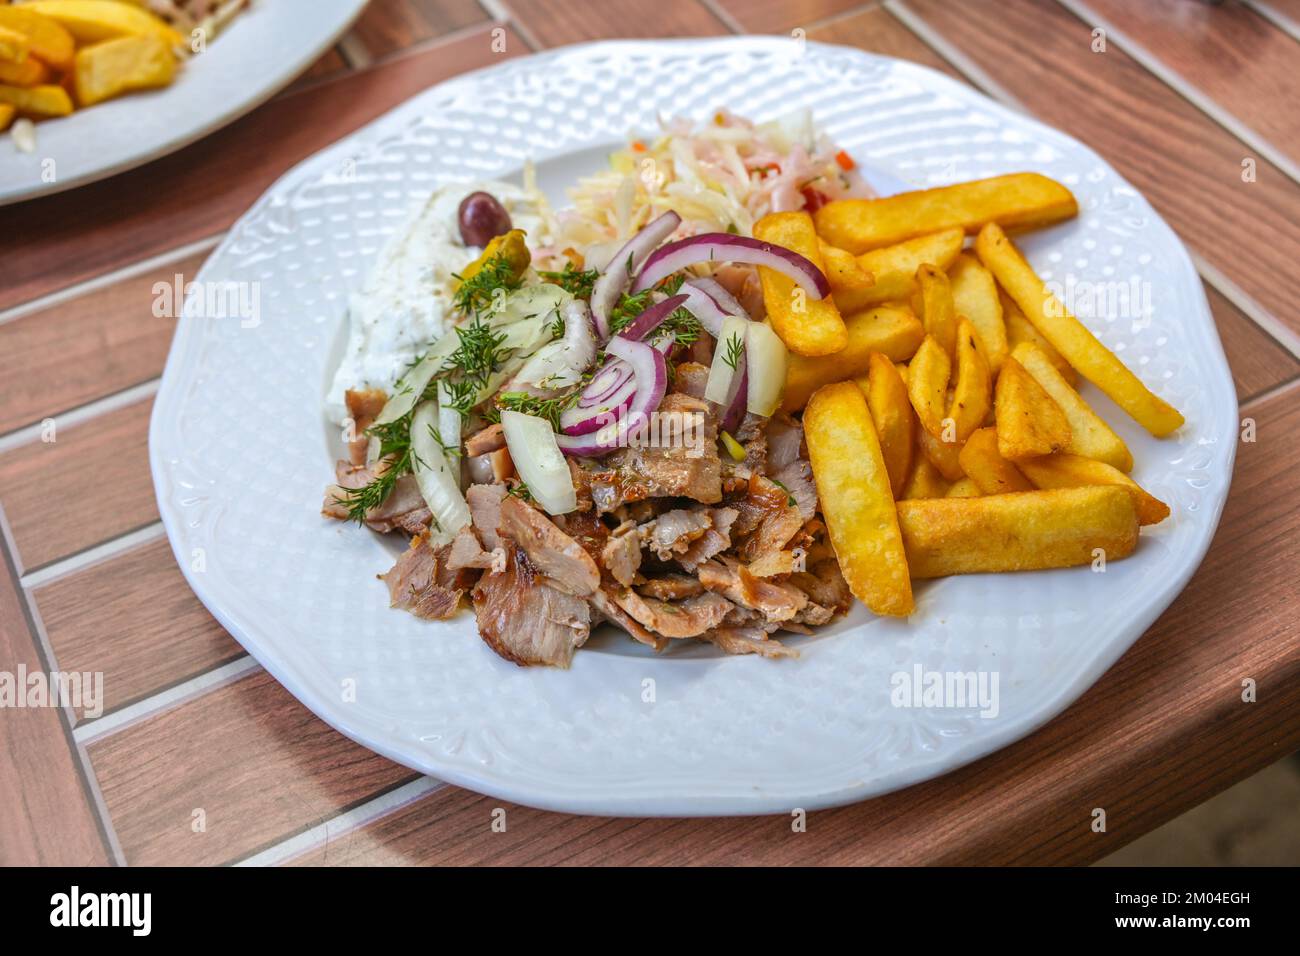 Gyros, piatto greco a fette di carne arrosto su uno spiedo, servito con patatine fritte, coleslaw, tzatziki e cipolle su un piatto bianco, all'aperto in legno Foto Stock